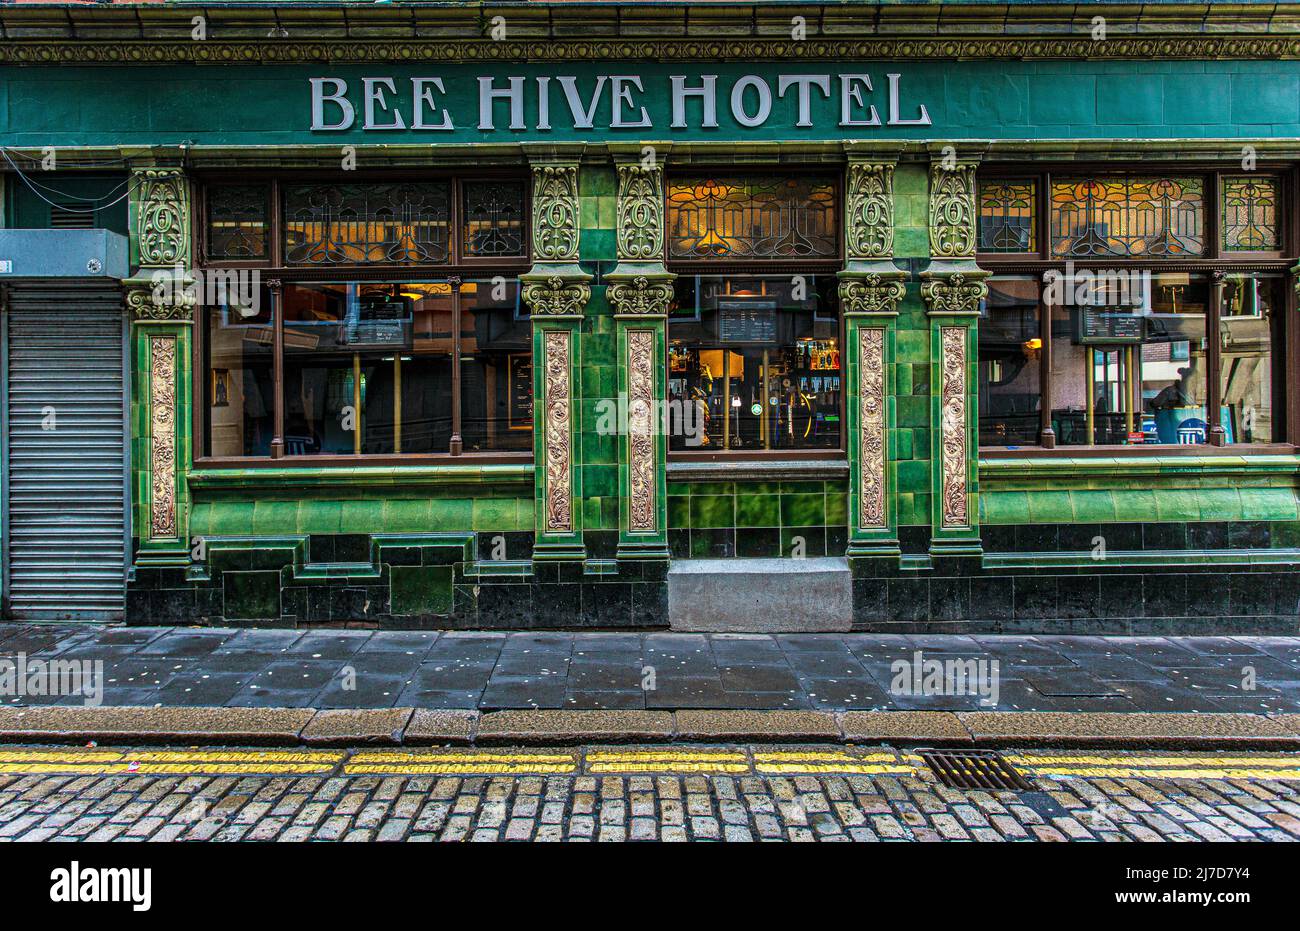 El exterior de la casa pública del Beehive Hotel está frente a azulejos verdes y amarillos. High Bridge , Newcastle upon Tyne, Inglaterra. Foto de stock